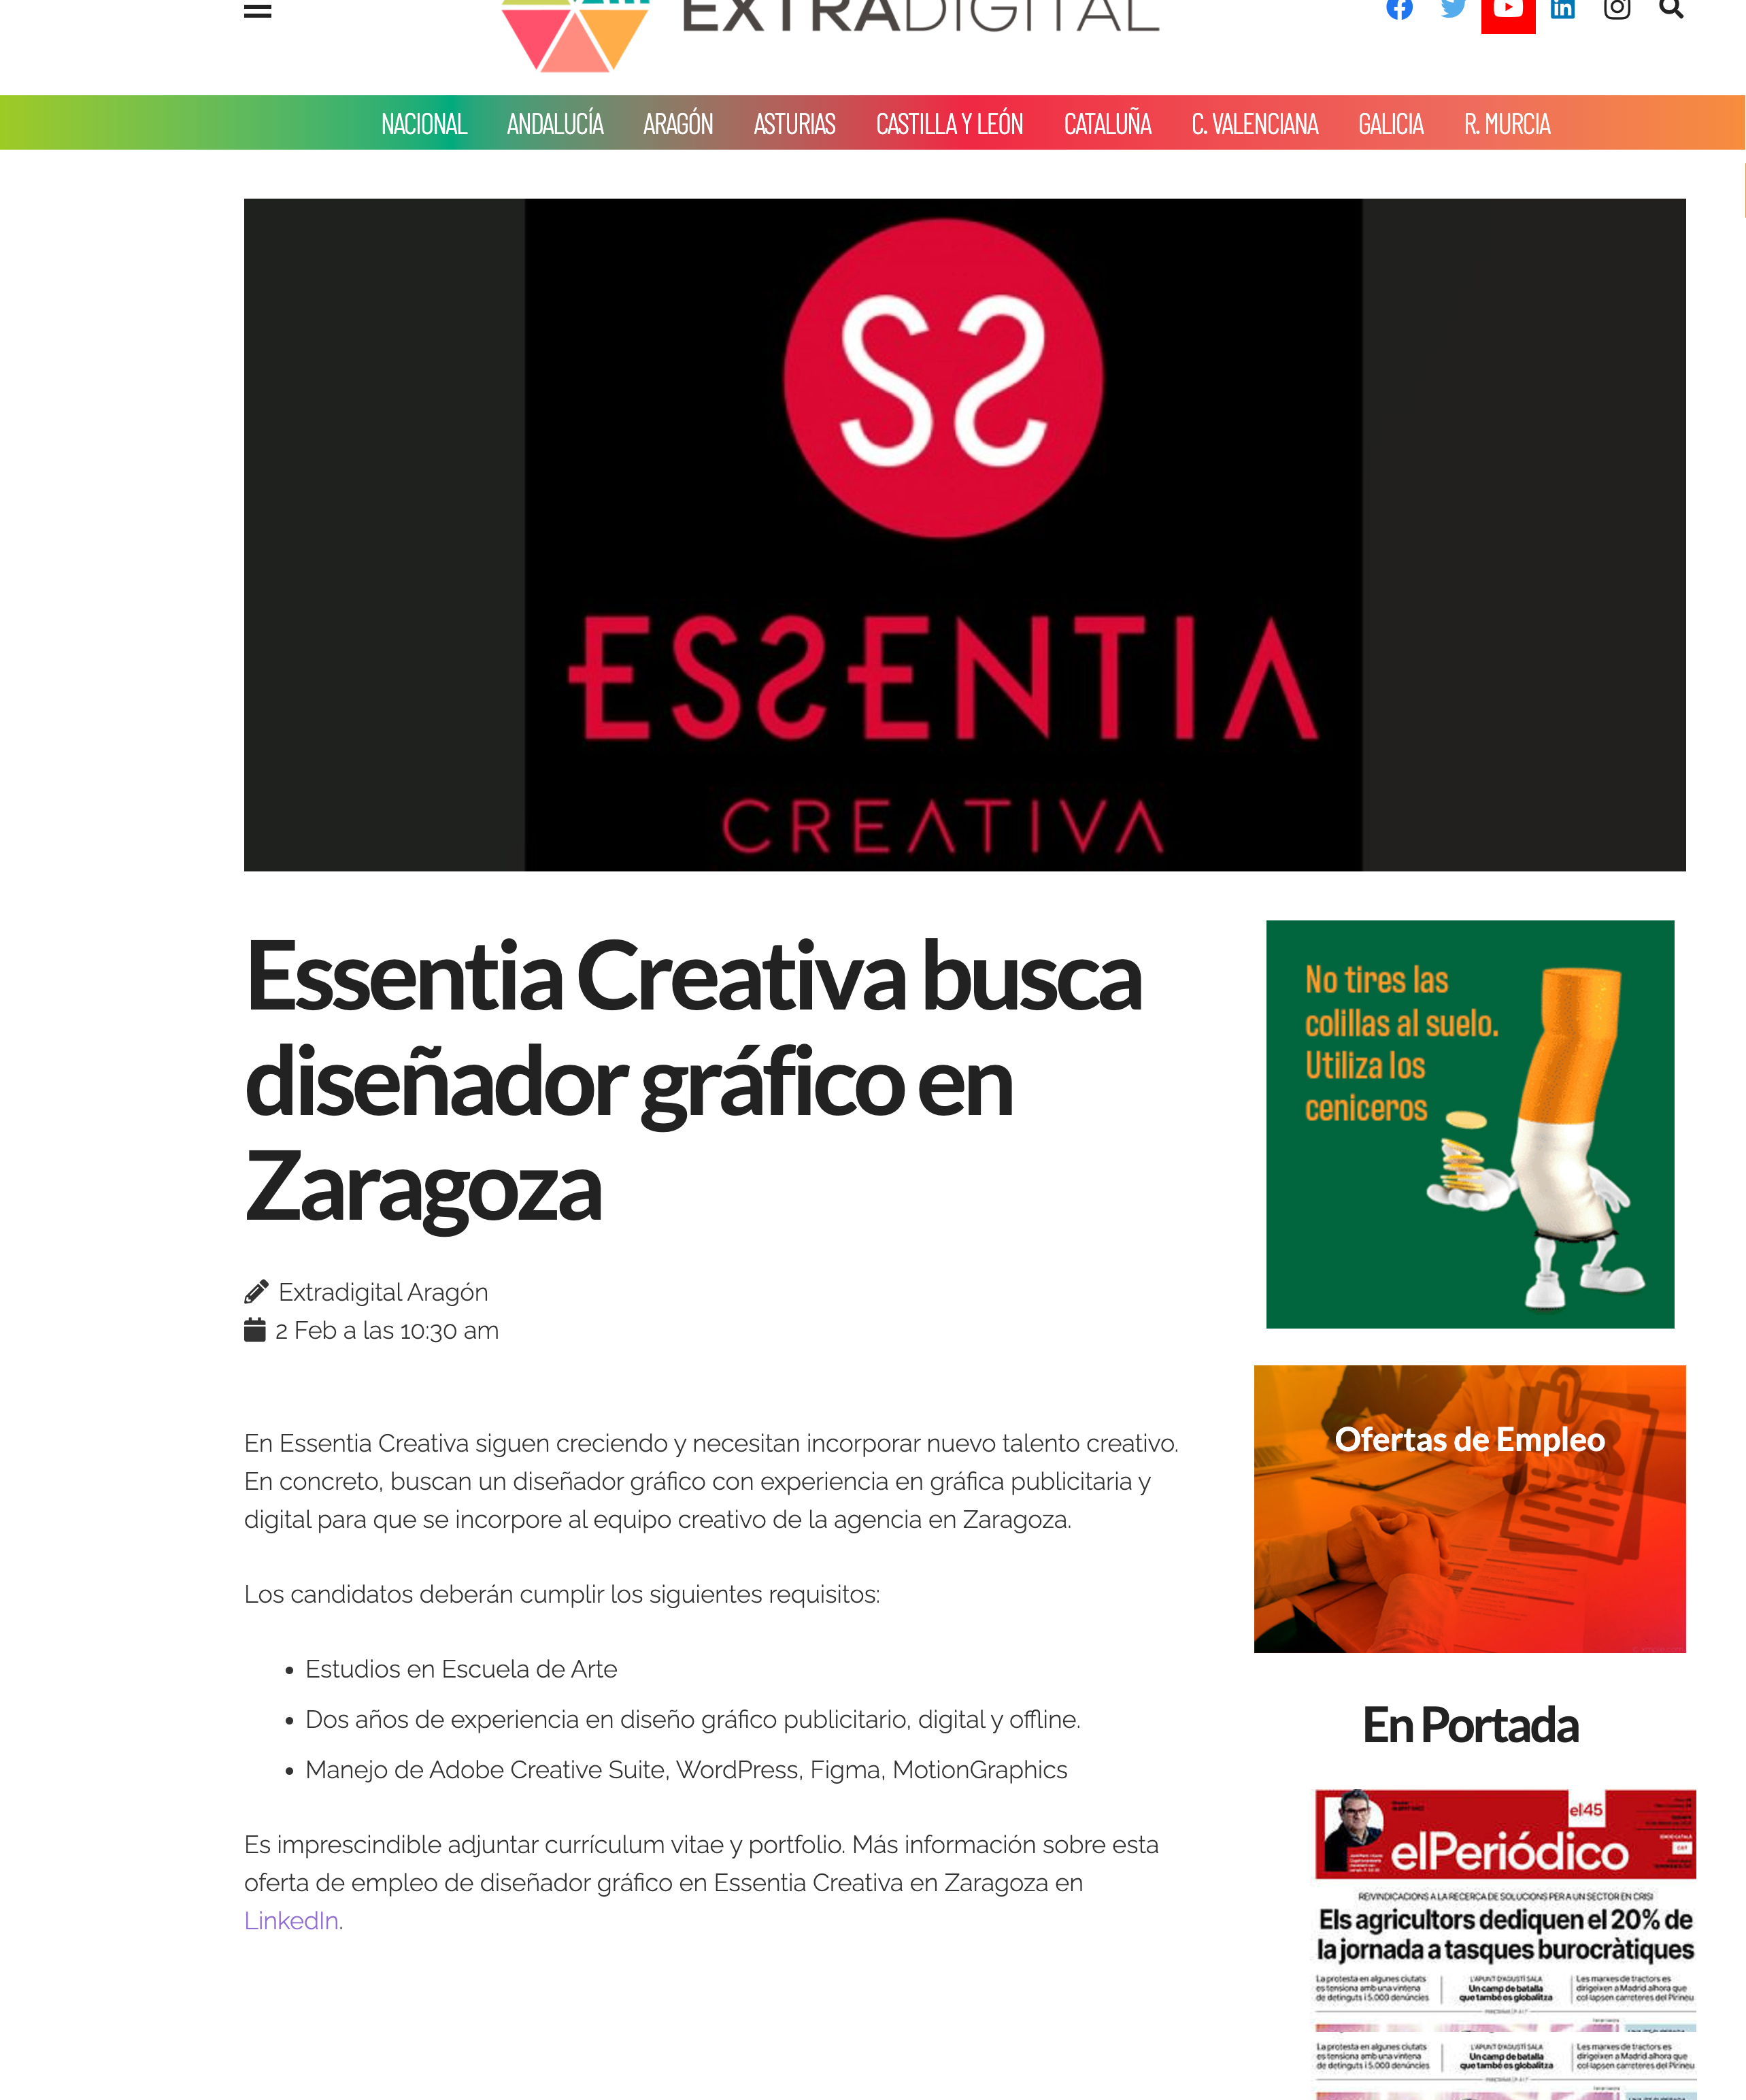 Extradigital: Essentia Creativa busca diseñador gráfico en Zaragoza